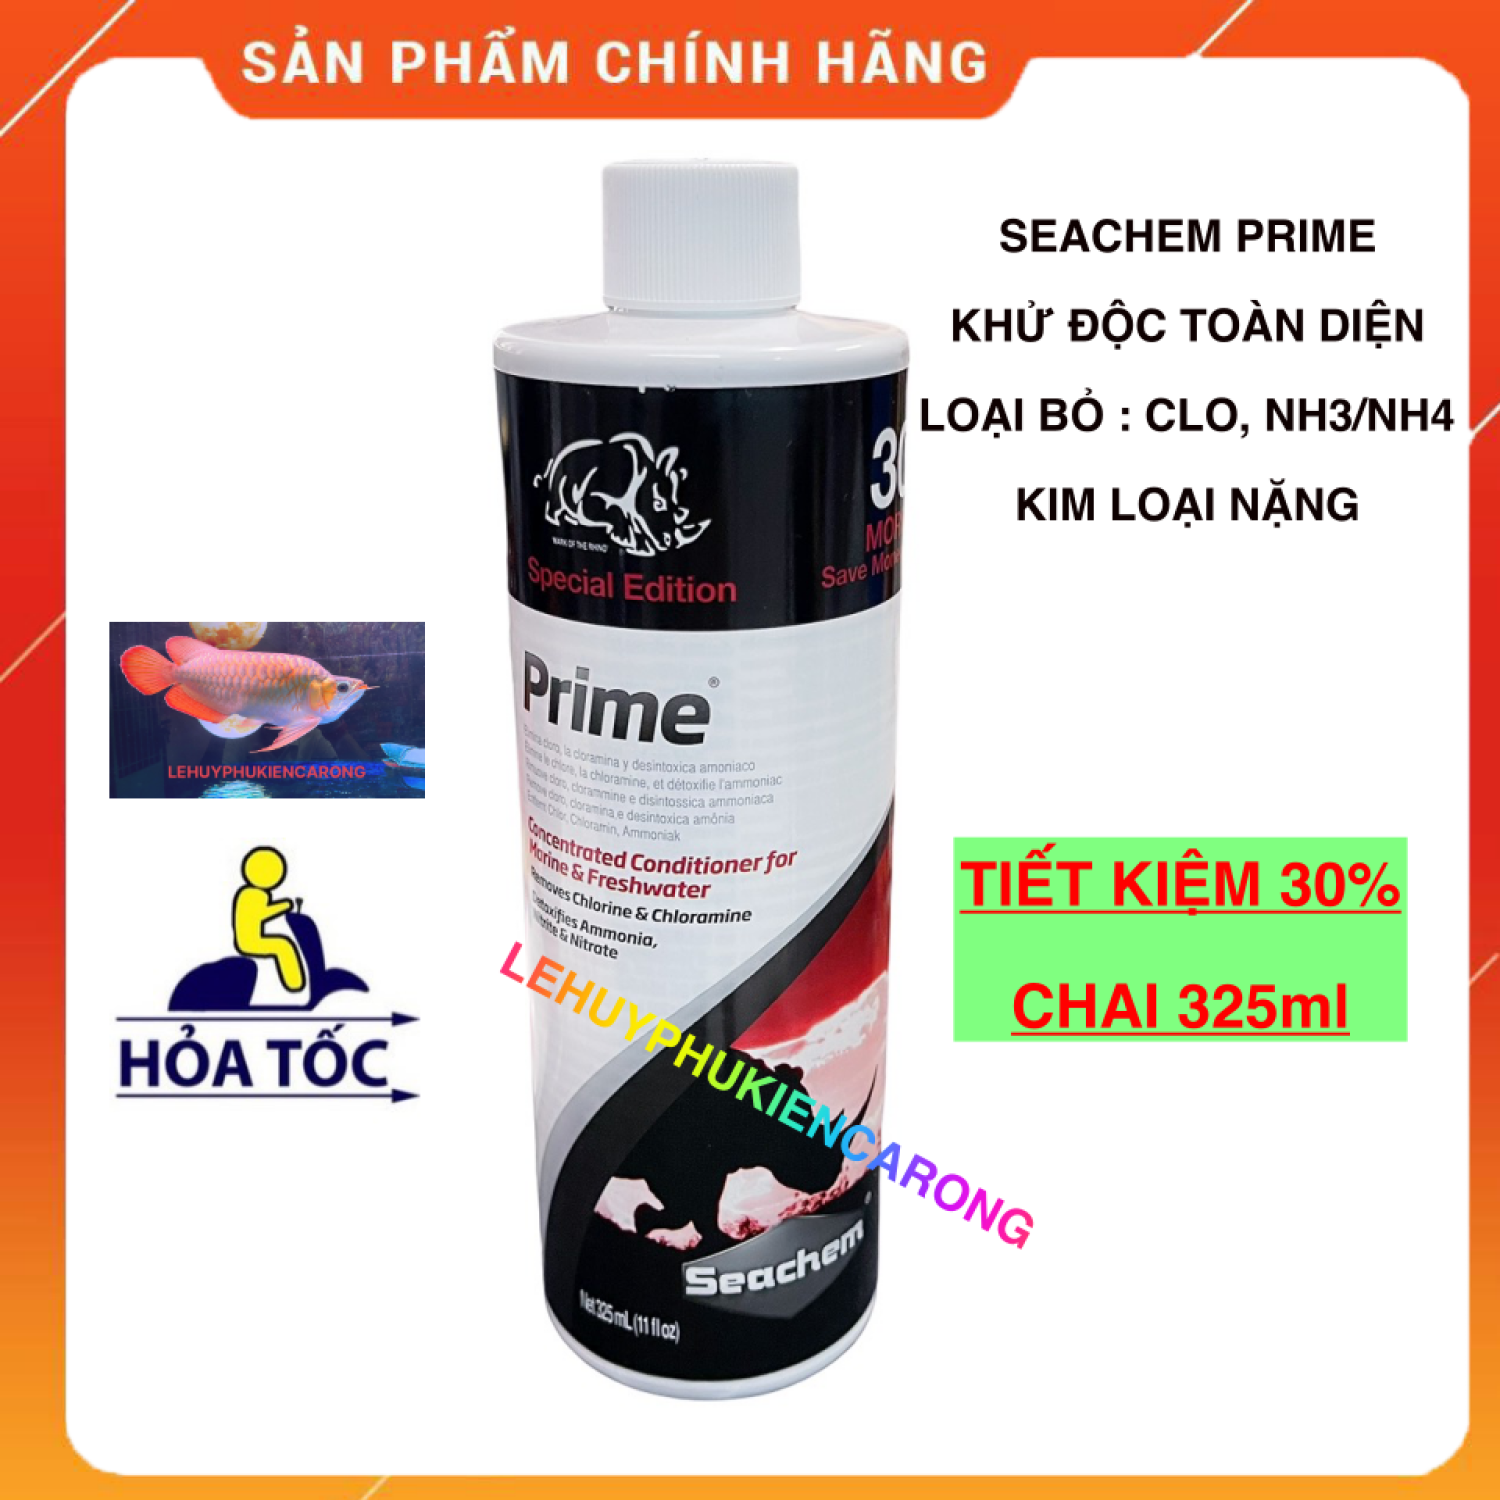 Seachem Prime Chai 325ml Dung Dịch Khử Nước TOÀN DIỆN Cho Bể Cá Cảnh